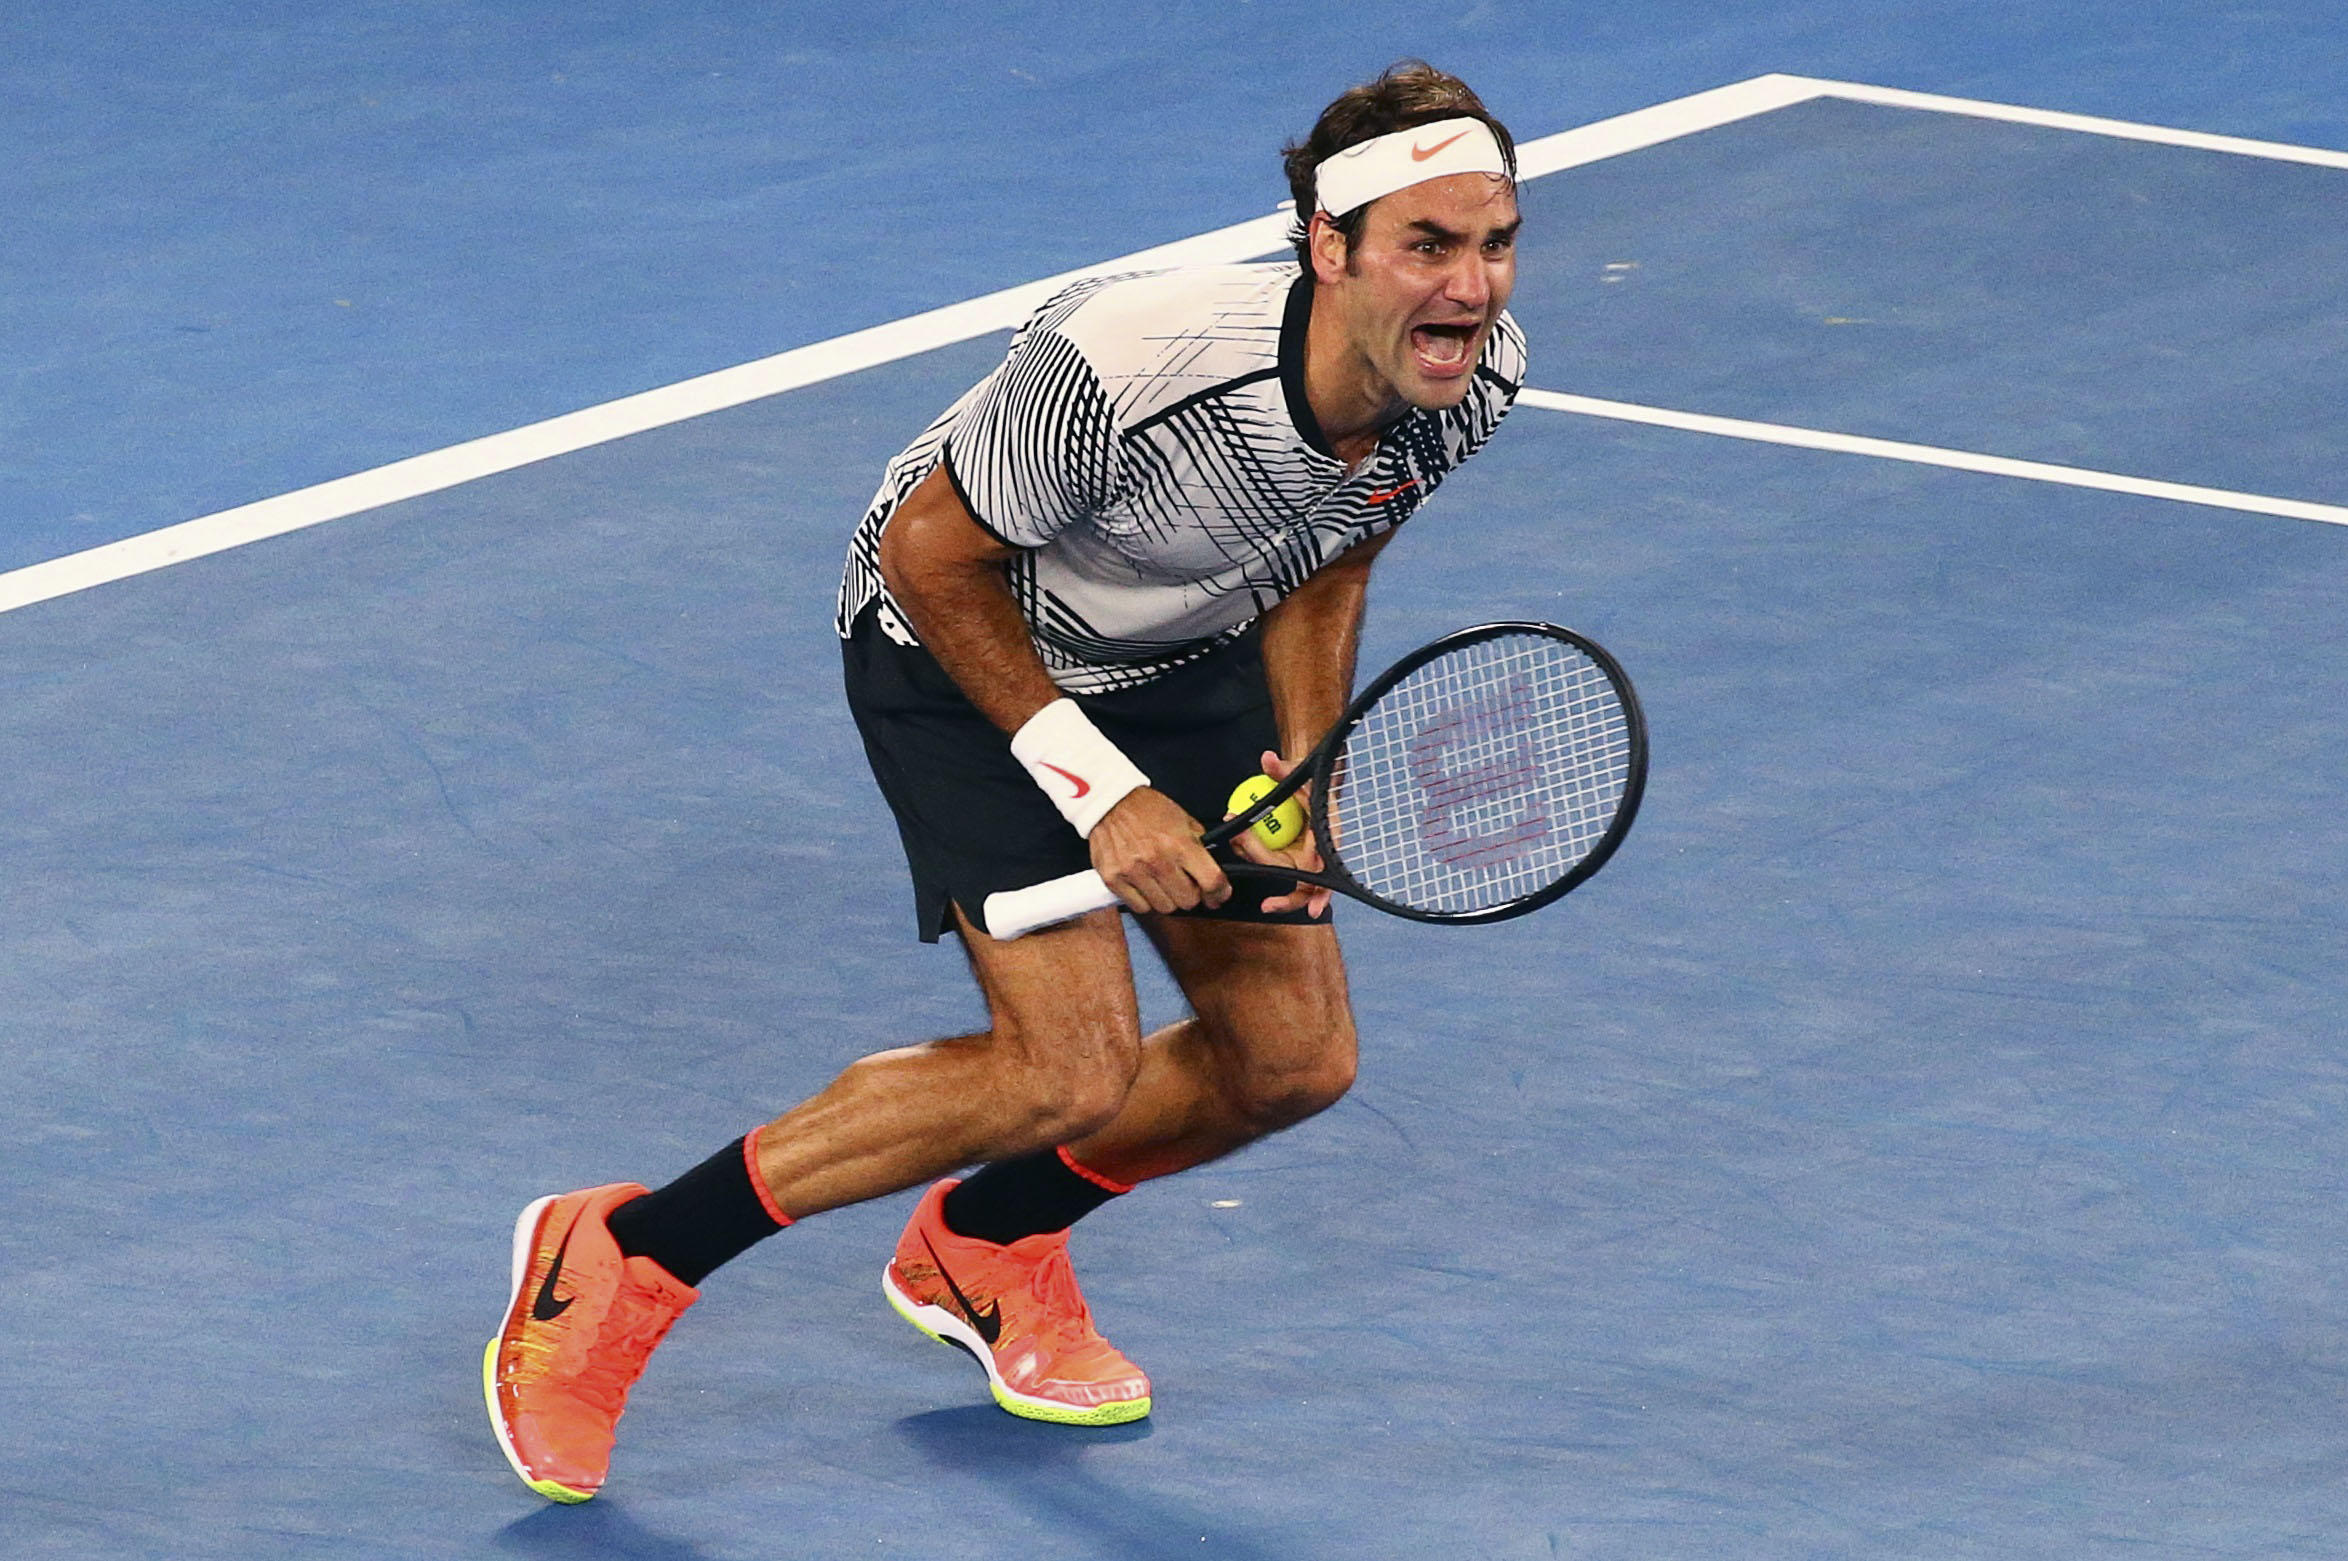 Promoten krullen Betasten Roger Federer beats Rafael Nadal at Aussie Open to win 18th Grand Slam  title - CBS News